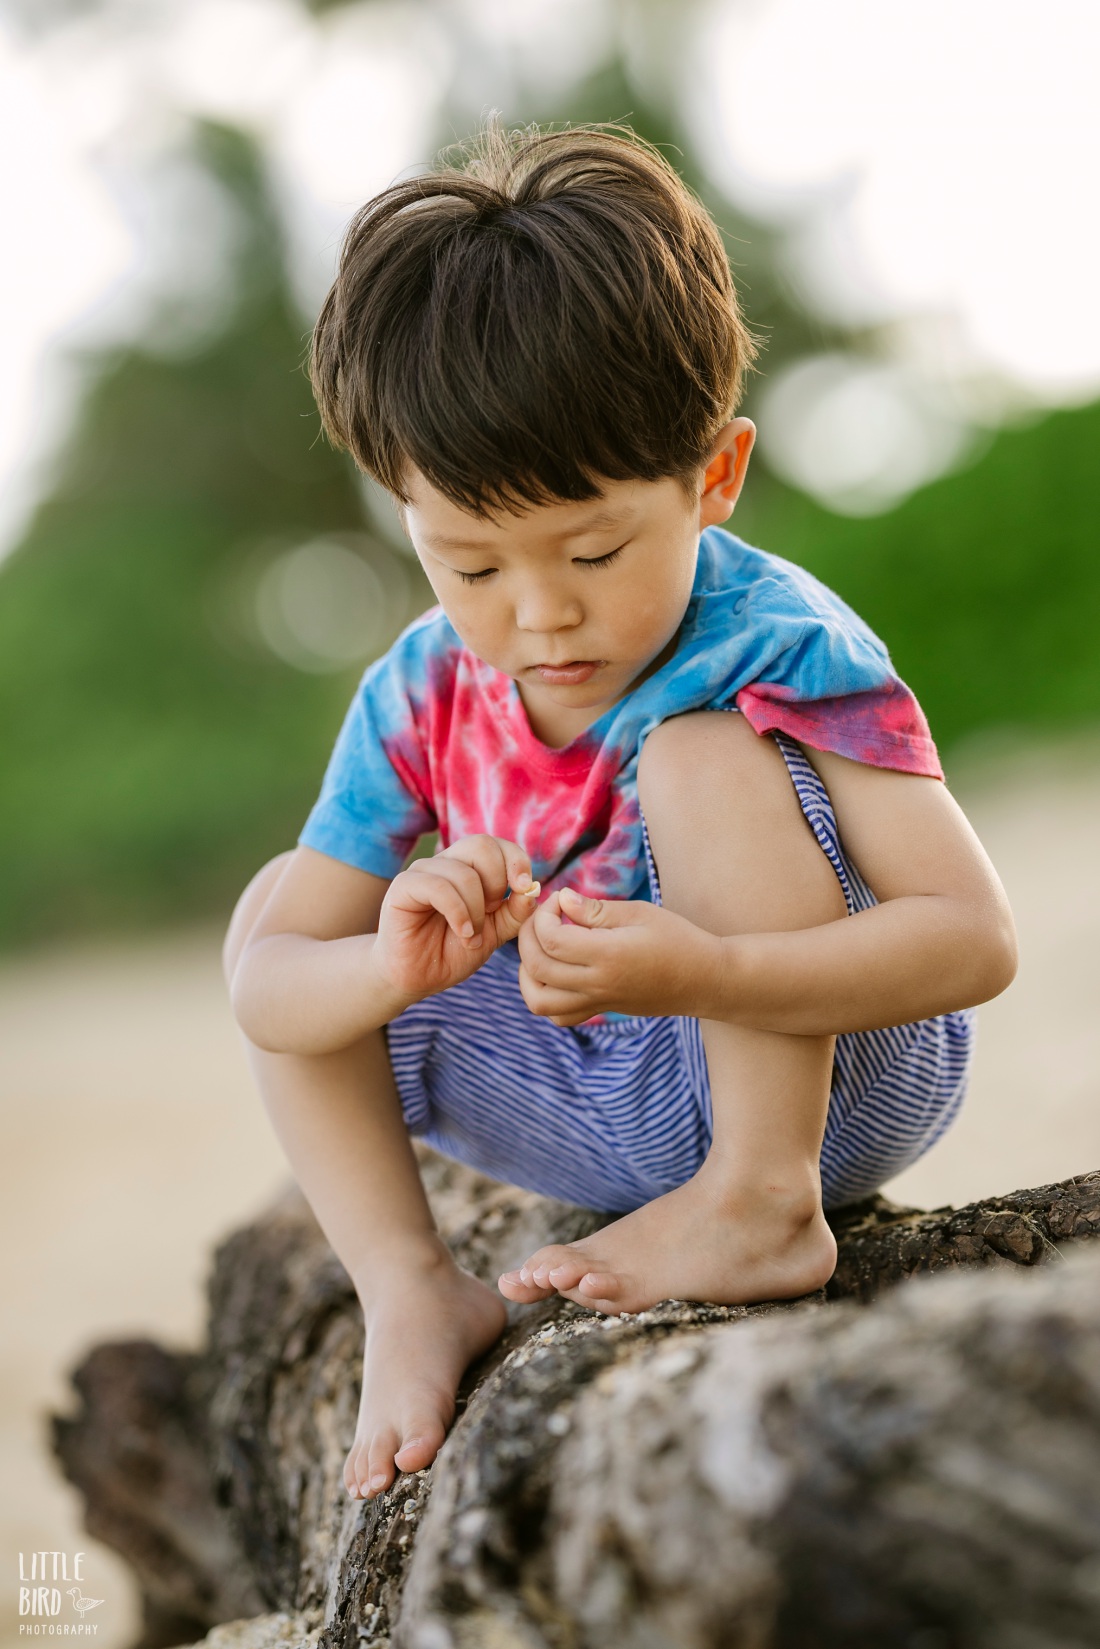 boy looking a shells on a beach in hawaii